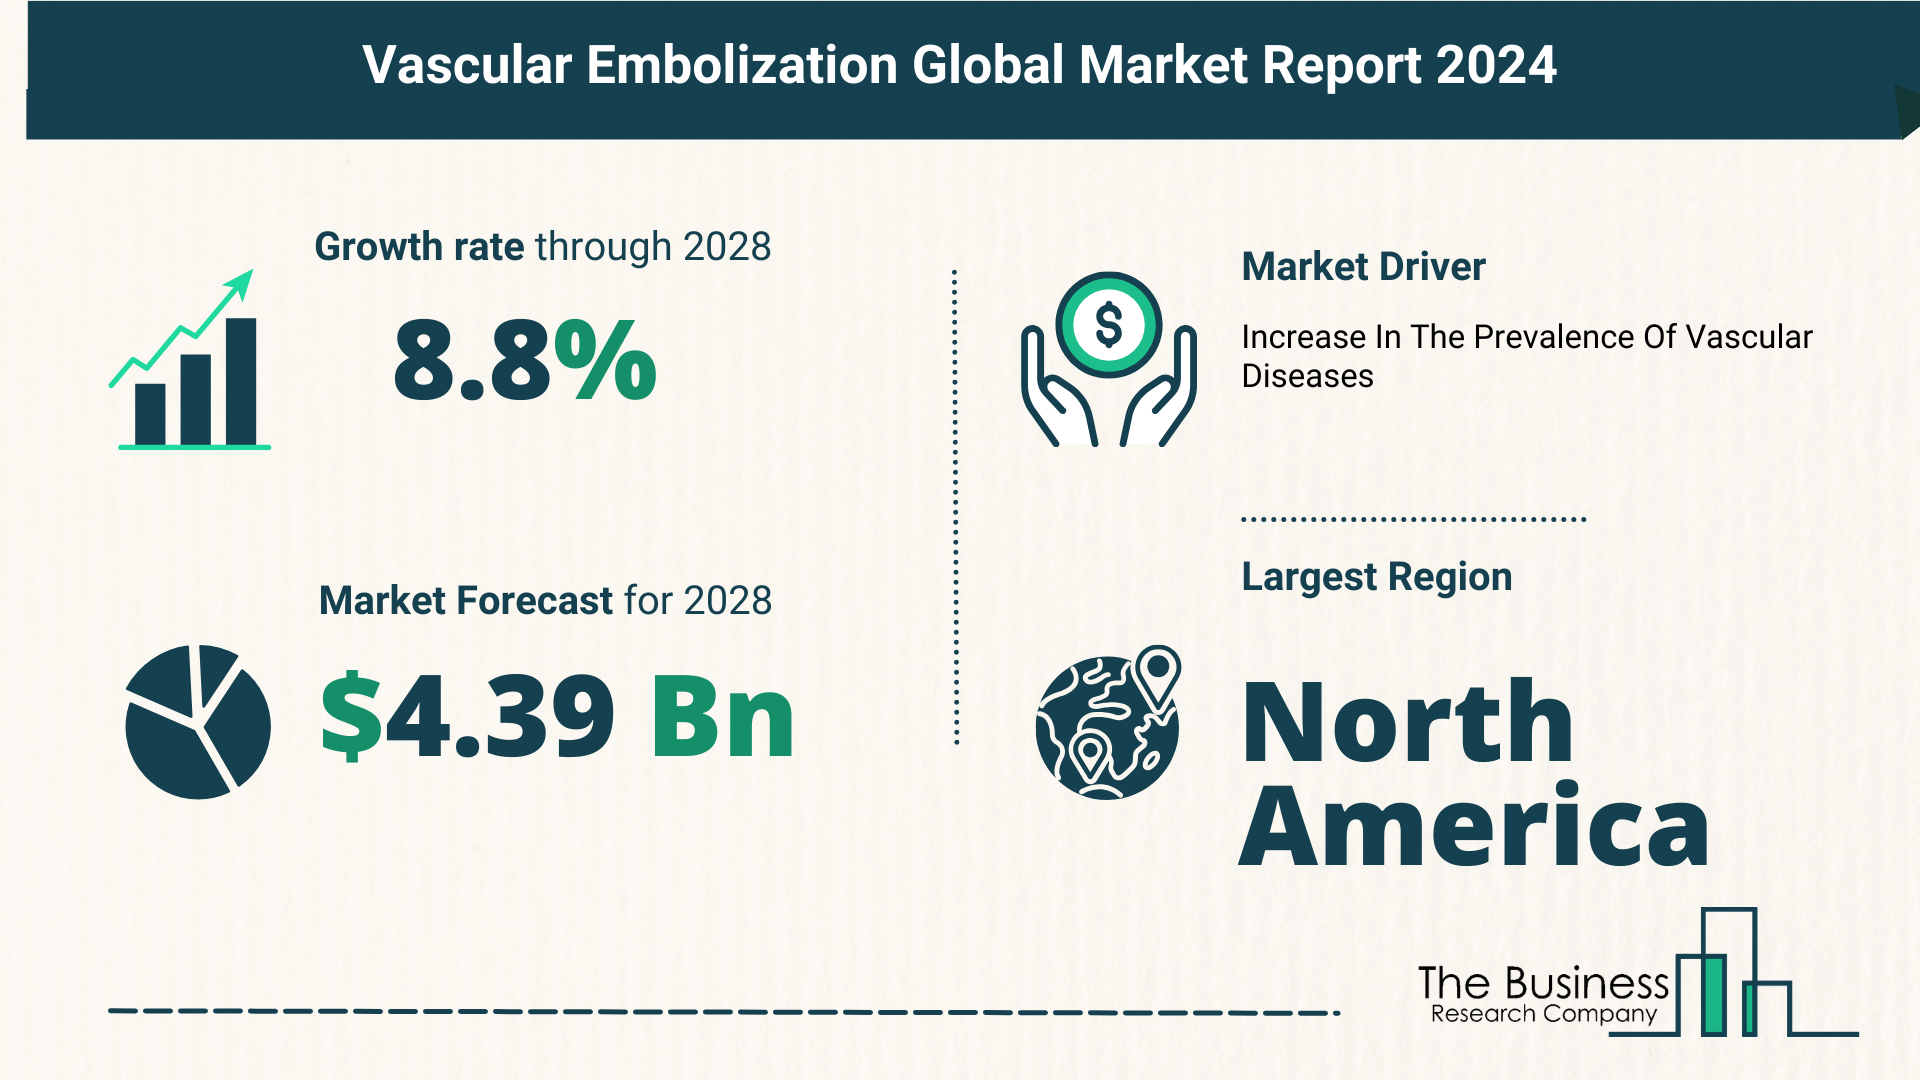 Global Vascular Embolization Market,